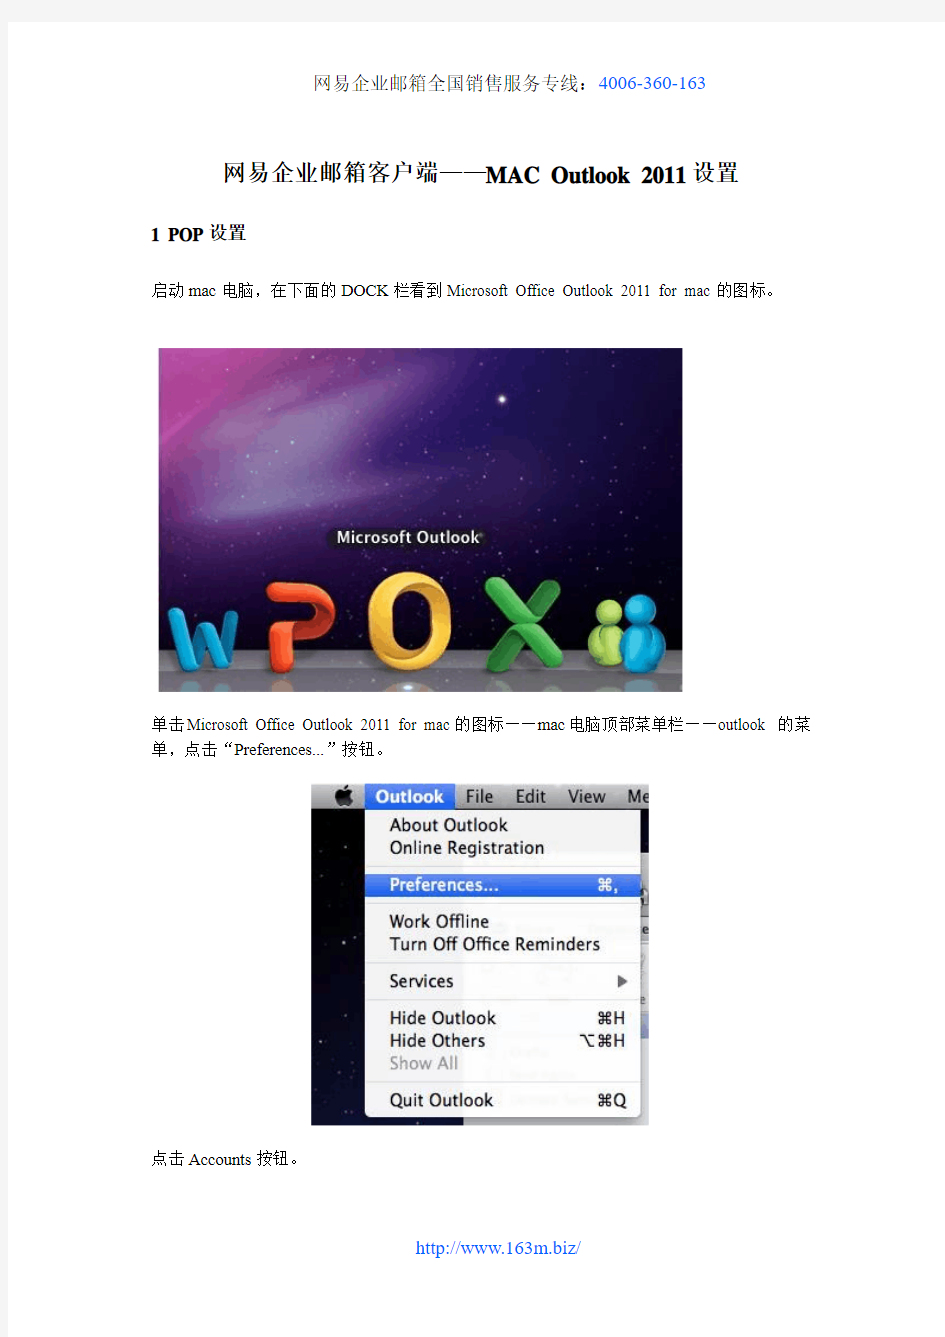 网易企业邮箱客户端——MAC Outlook 2011设置